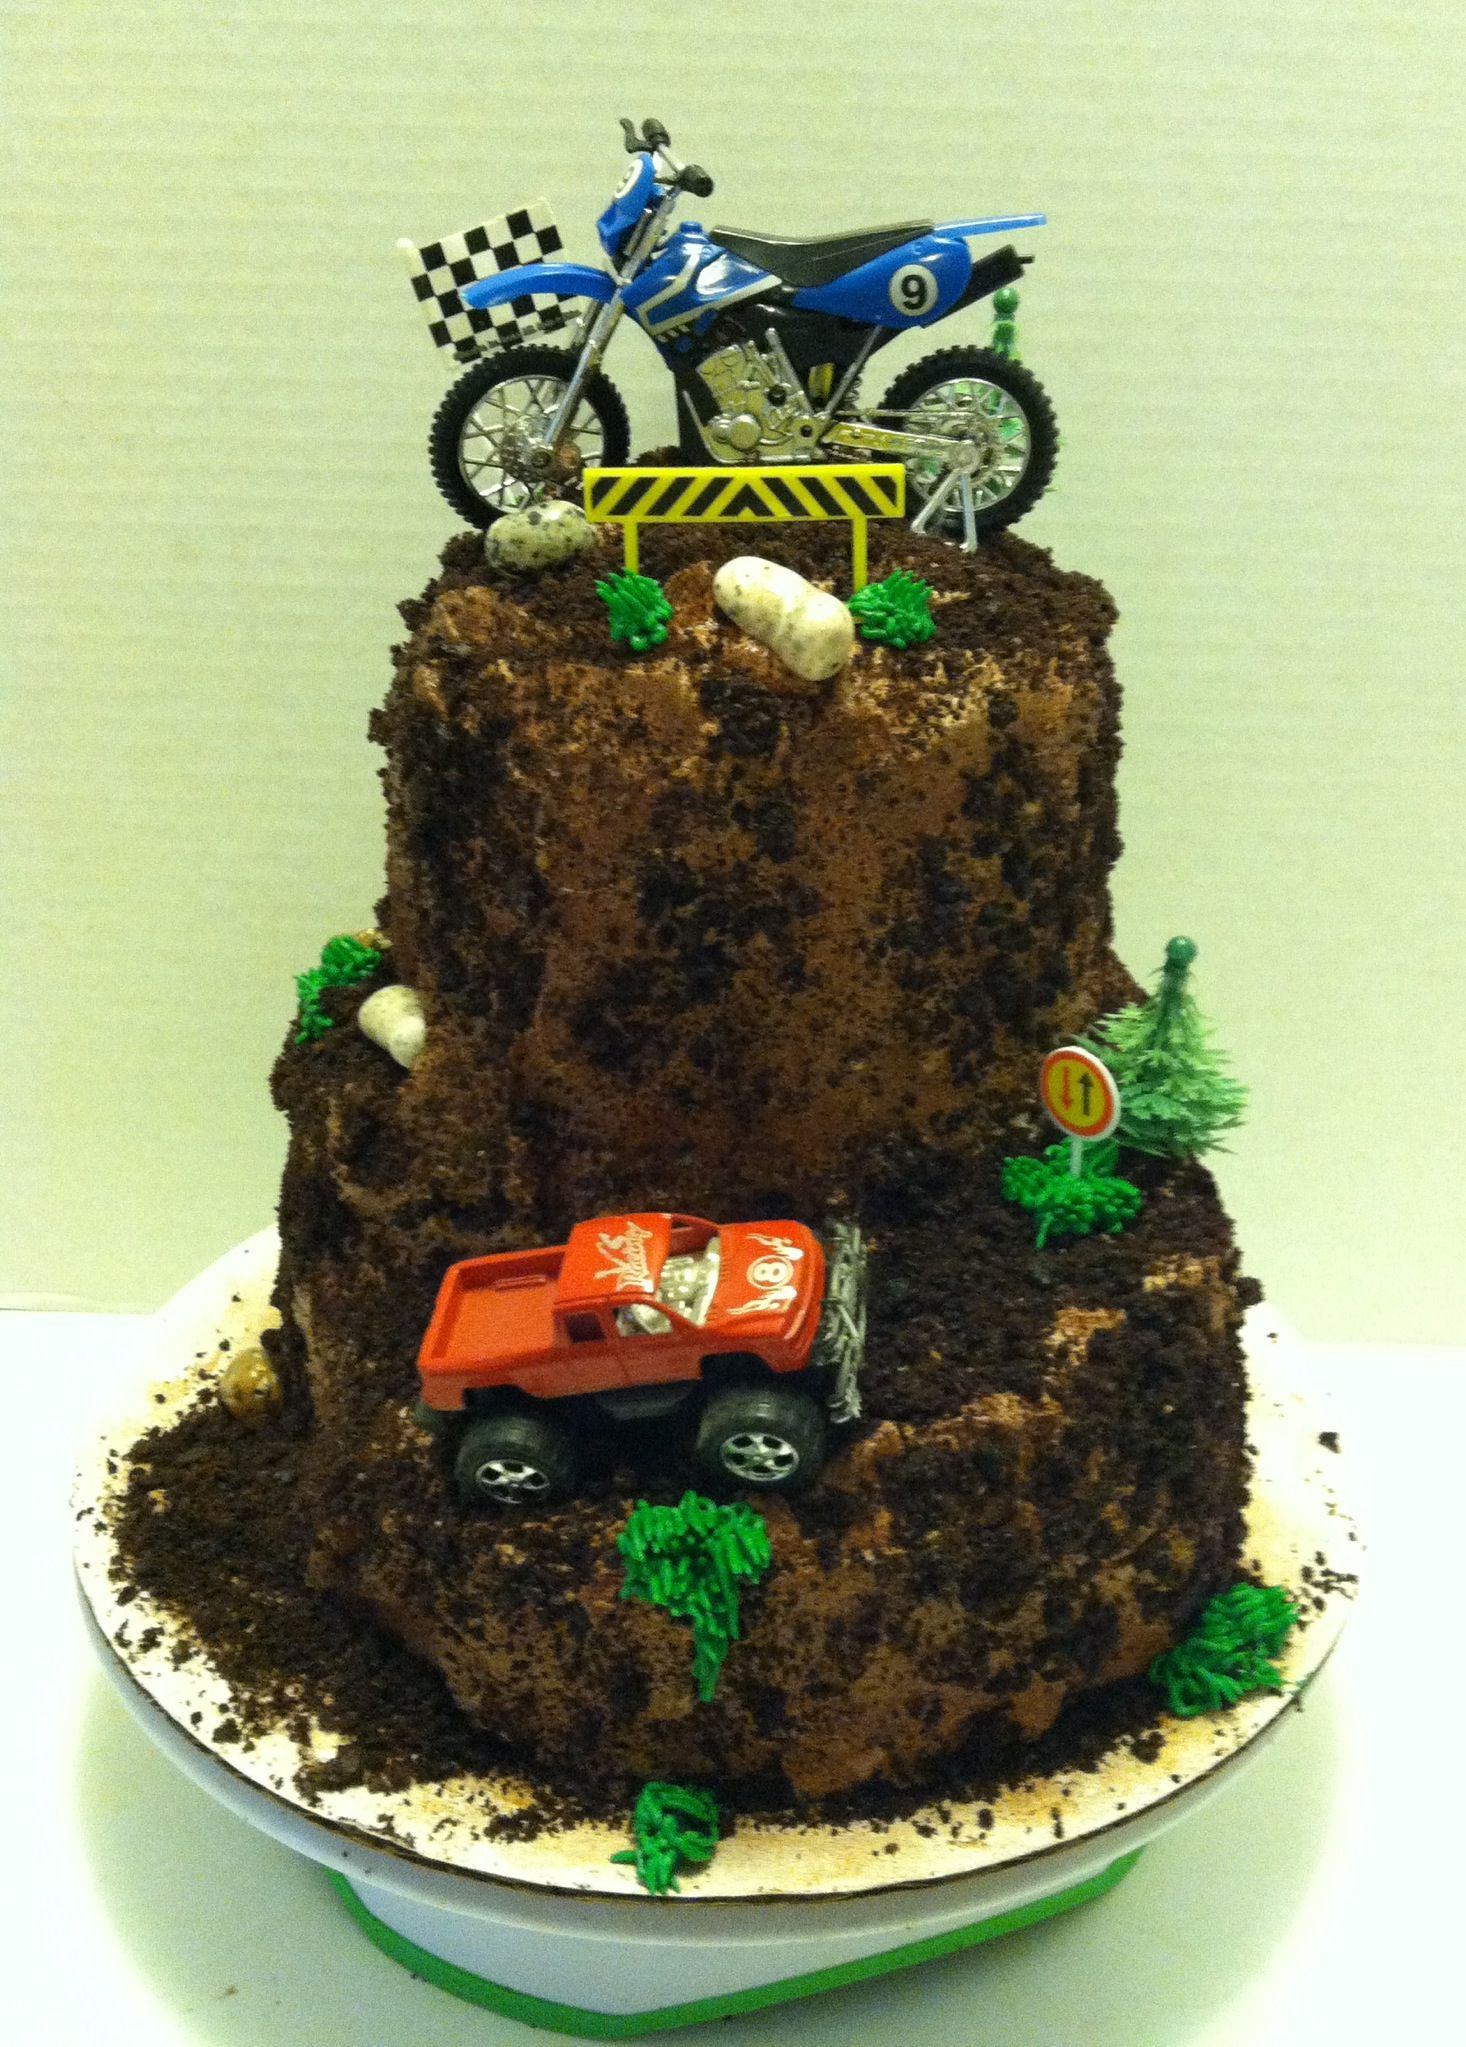 Dirt Bike Birthday Cakes
 Dirt bike and monster truck theme cake